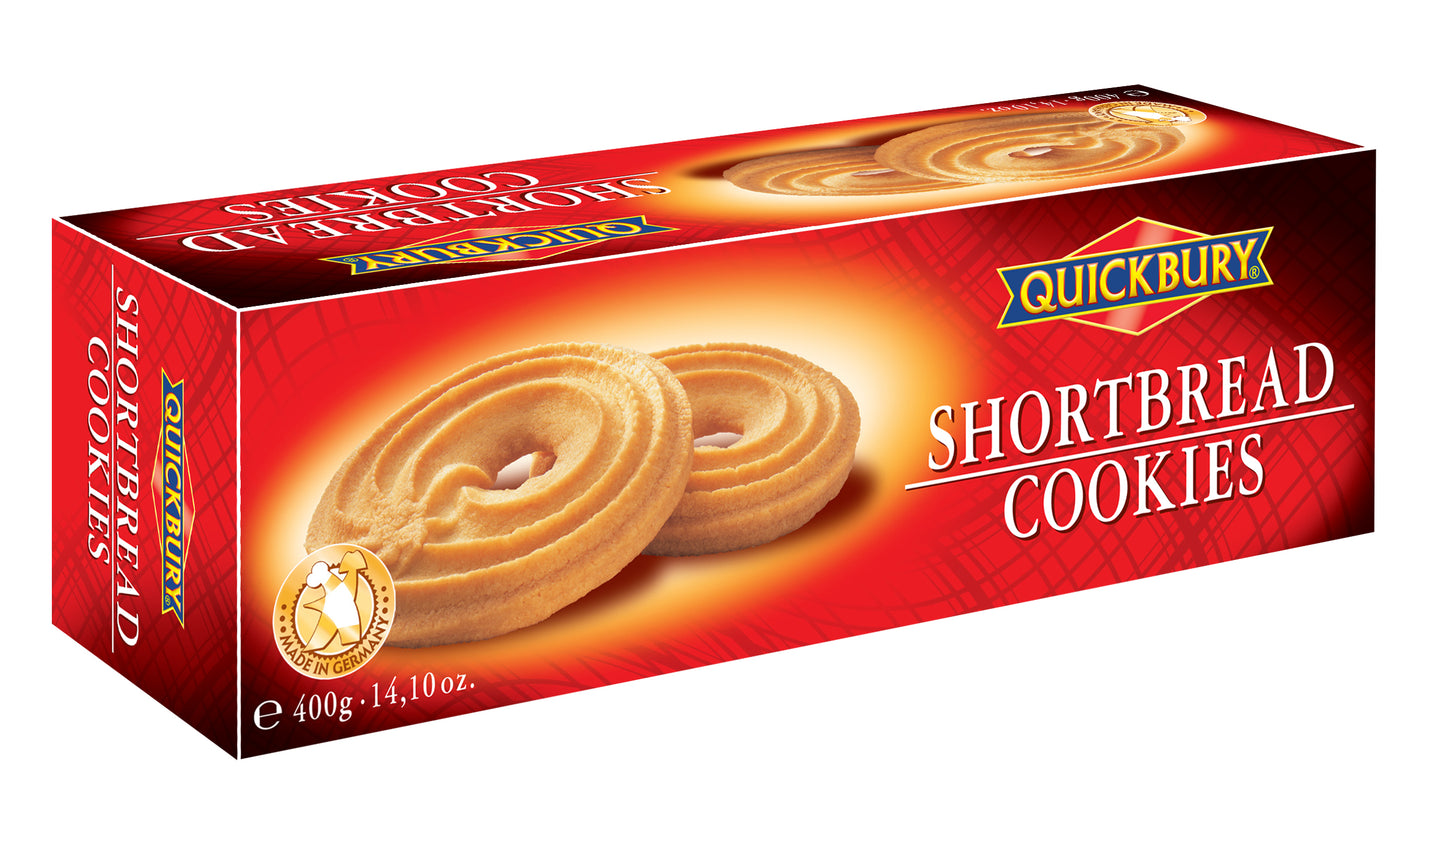 Quickbury Shortbread Cookies 400g